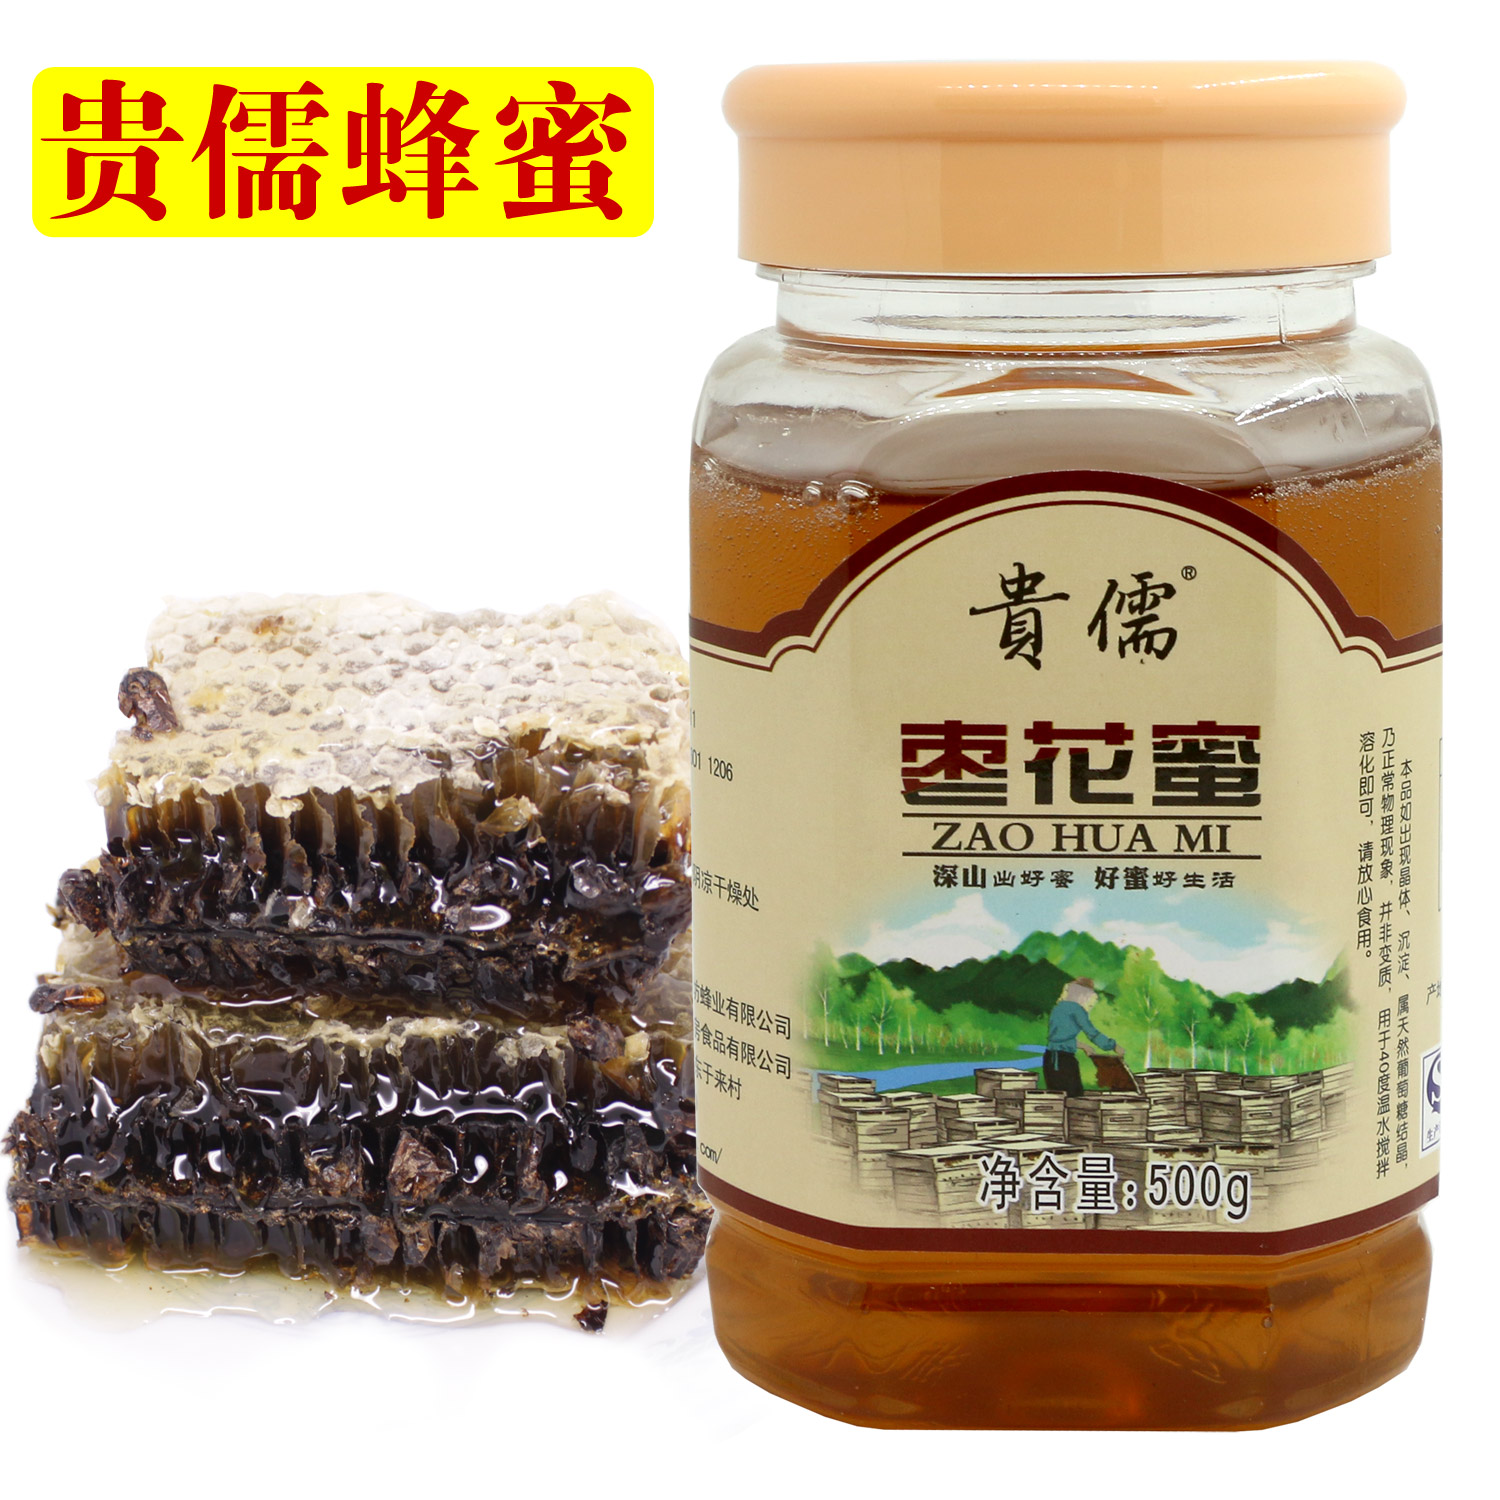 【16年新蜜】沂蒙山农家纯蜂蜜500克 贵儒原生态枣花蜜 自产天然